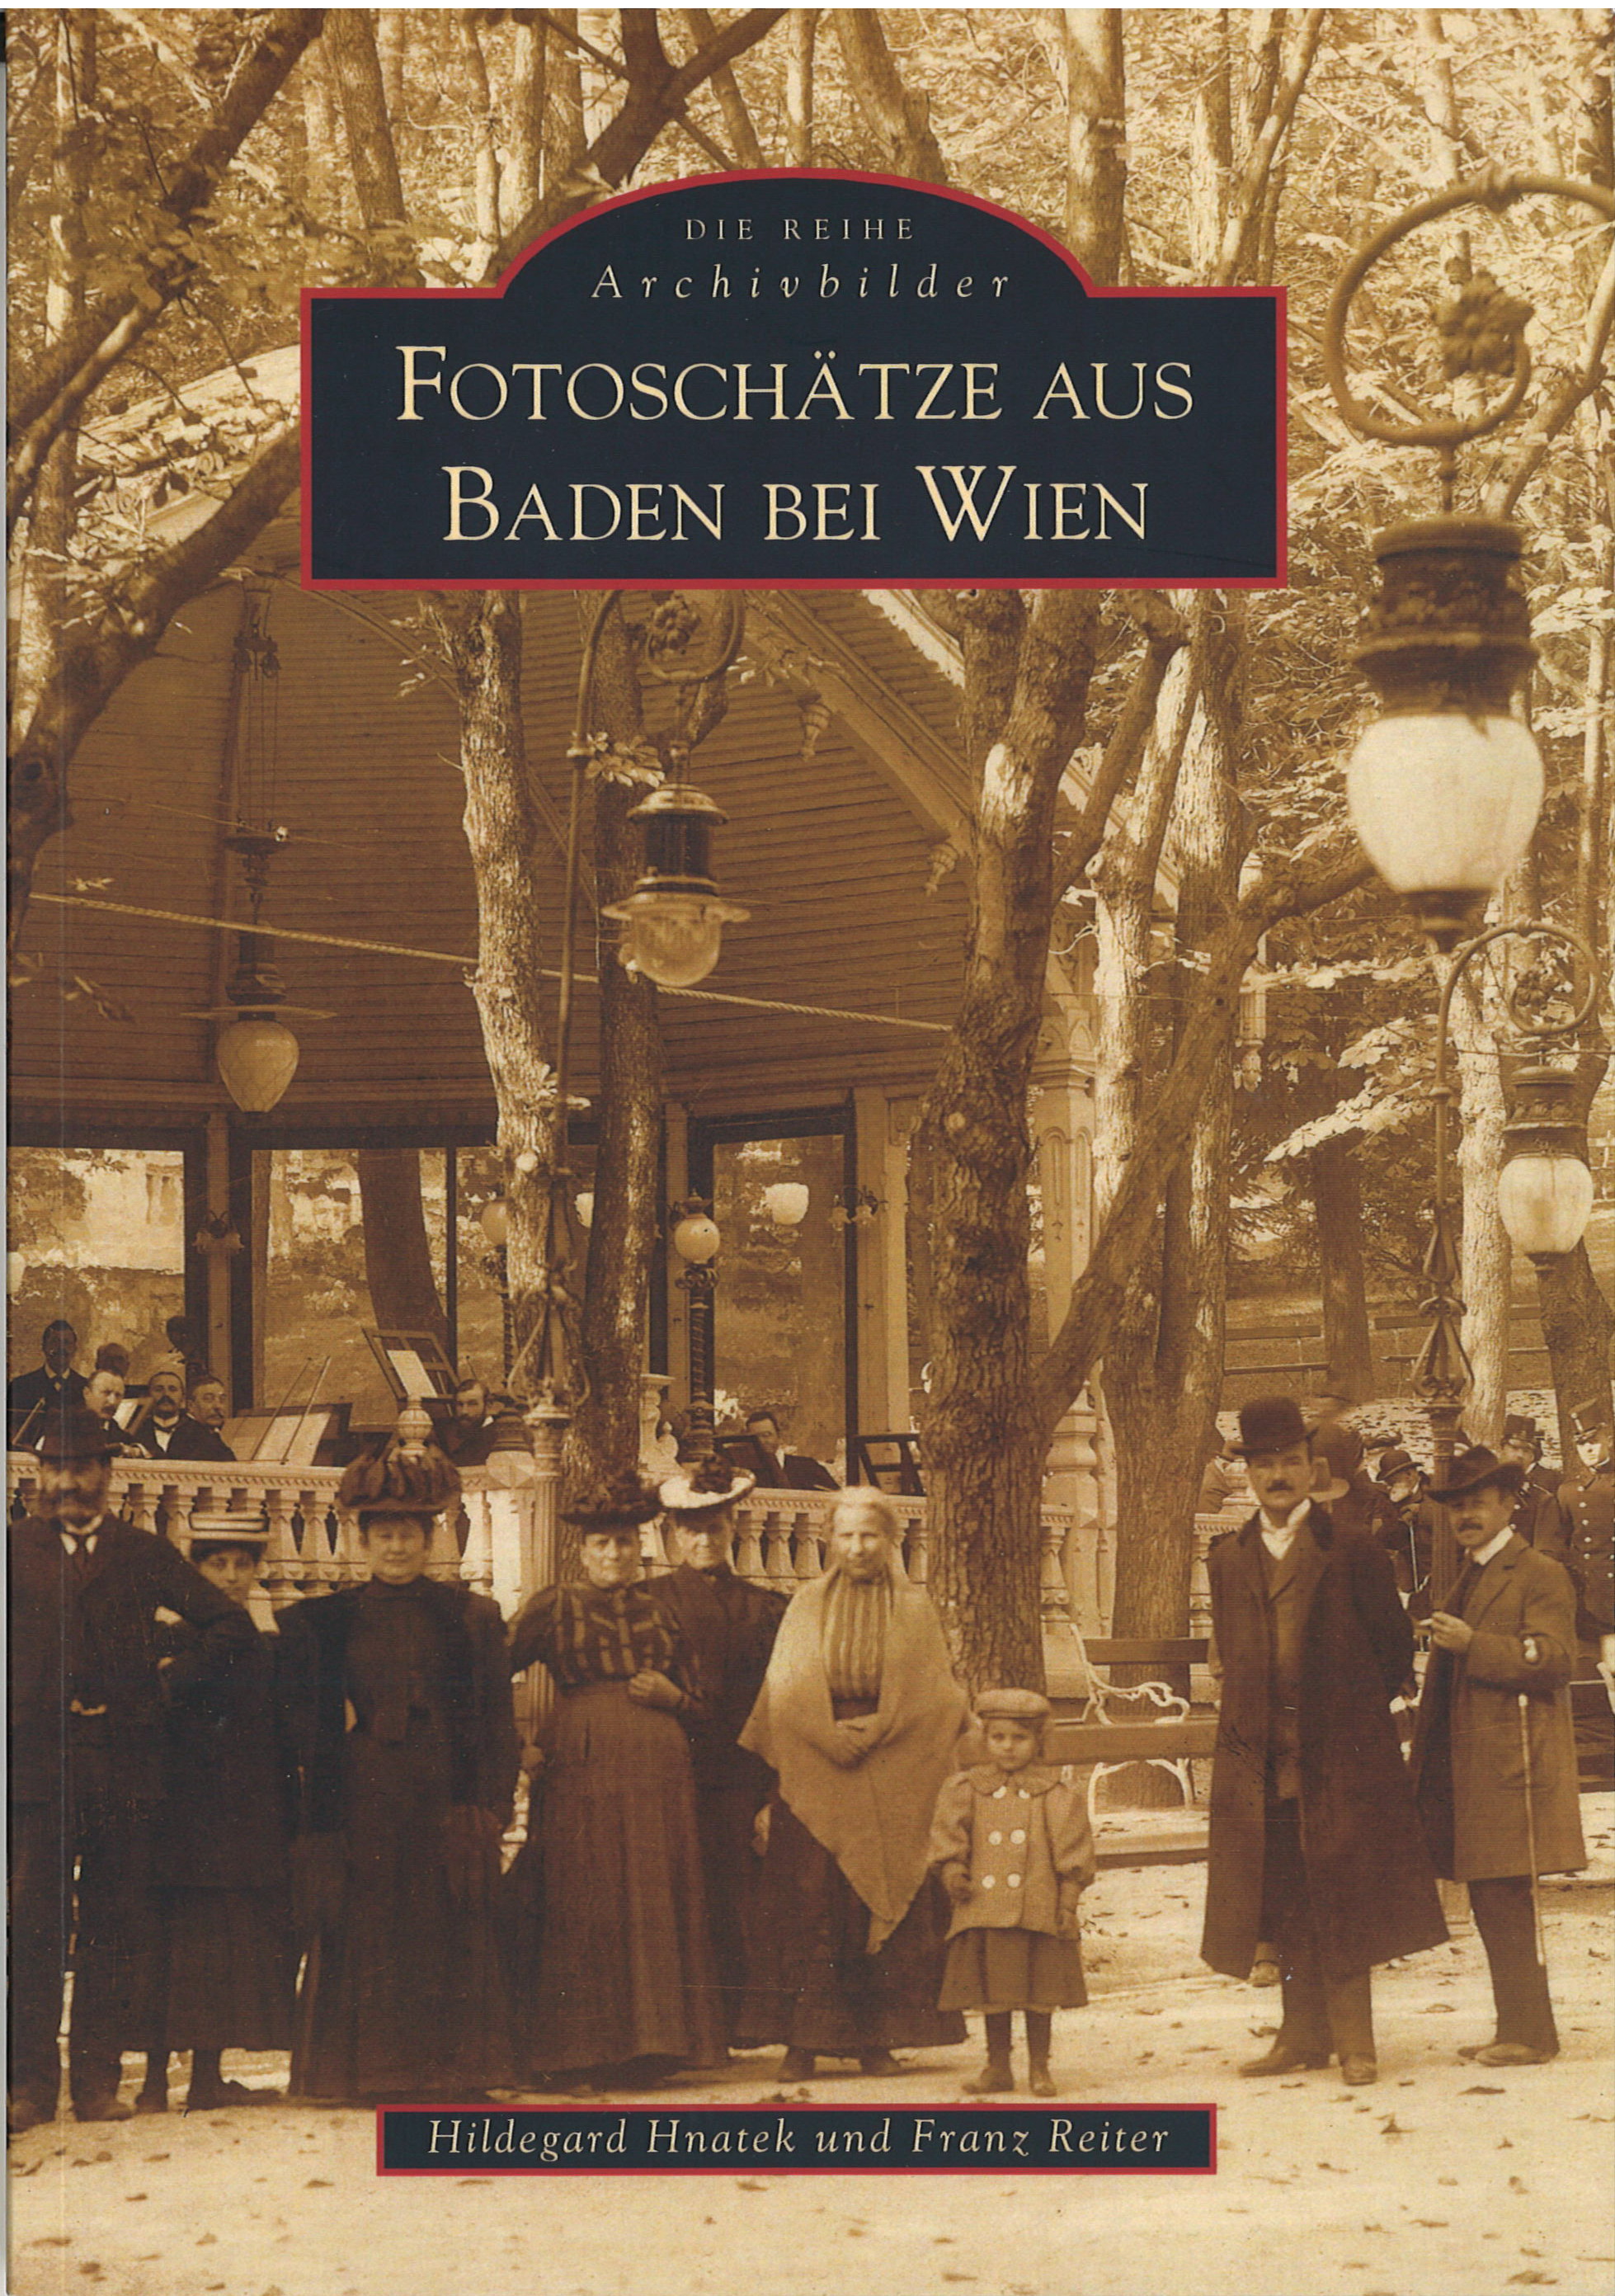 Fotoschätze aus Baden bei Wien 130 Seiten, Hildegard Hnatek und Franz Reiter € 19,00